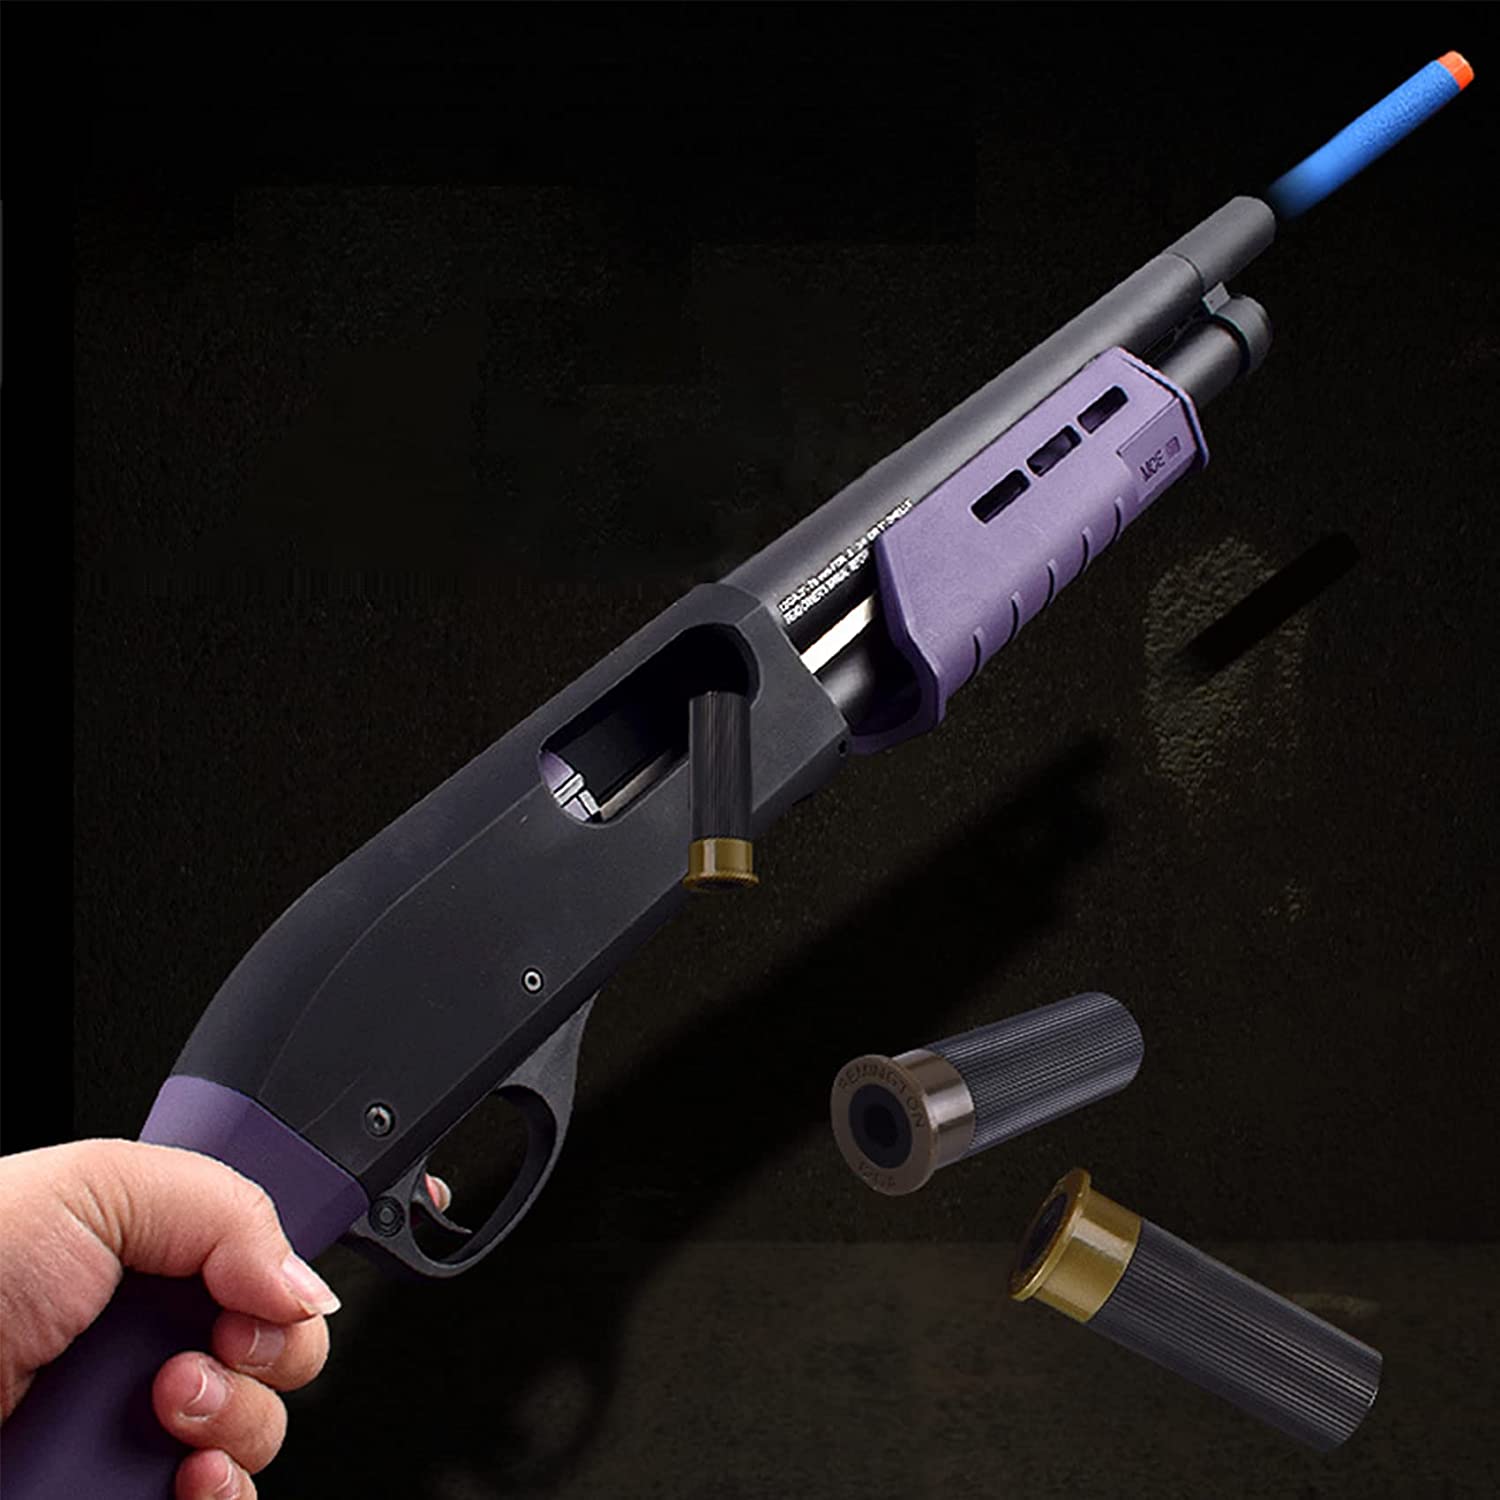 ショットガン M870 ナーフ おもちゃ銃 - コレクション、趣味